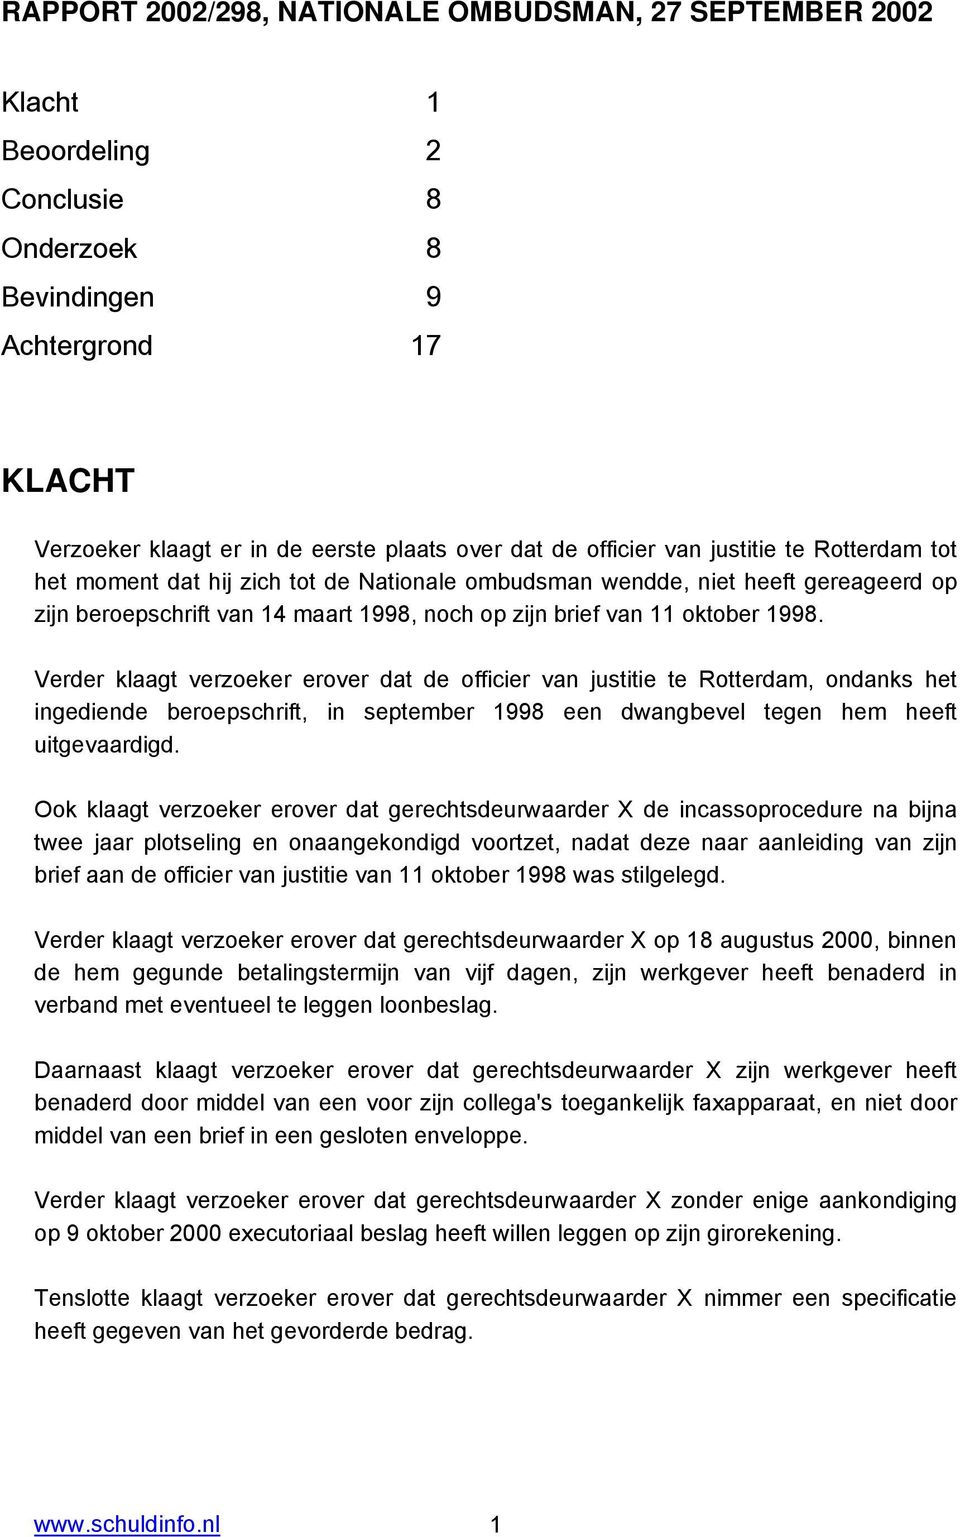 Verder klaagt verzoeker erover dat de officier van justitie te Rotterdam, ondanks het ingediende beroepschrift, in september 1998 een dwangbevel tegen hem heeft uitgevaardigd.